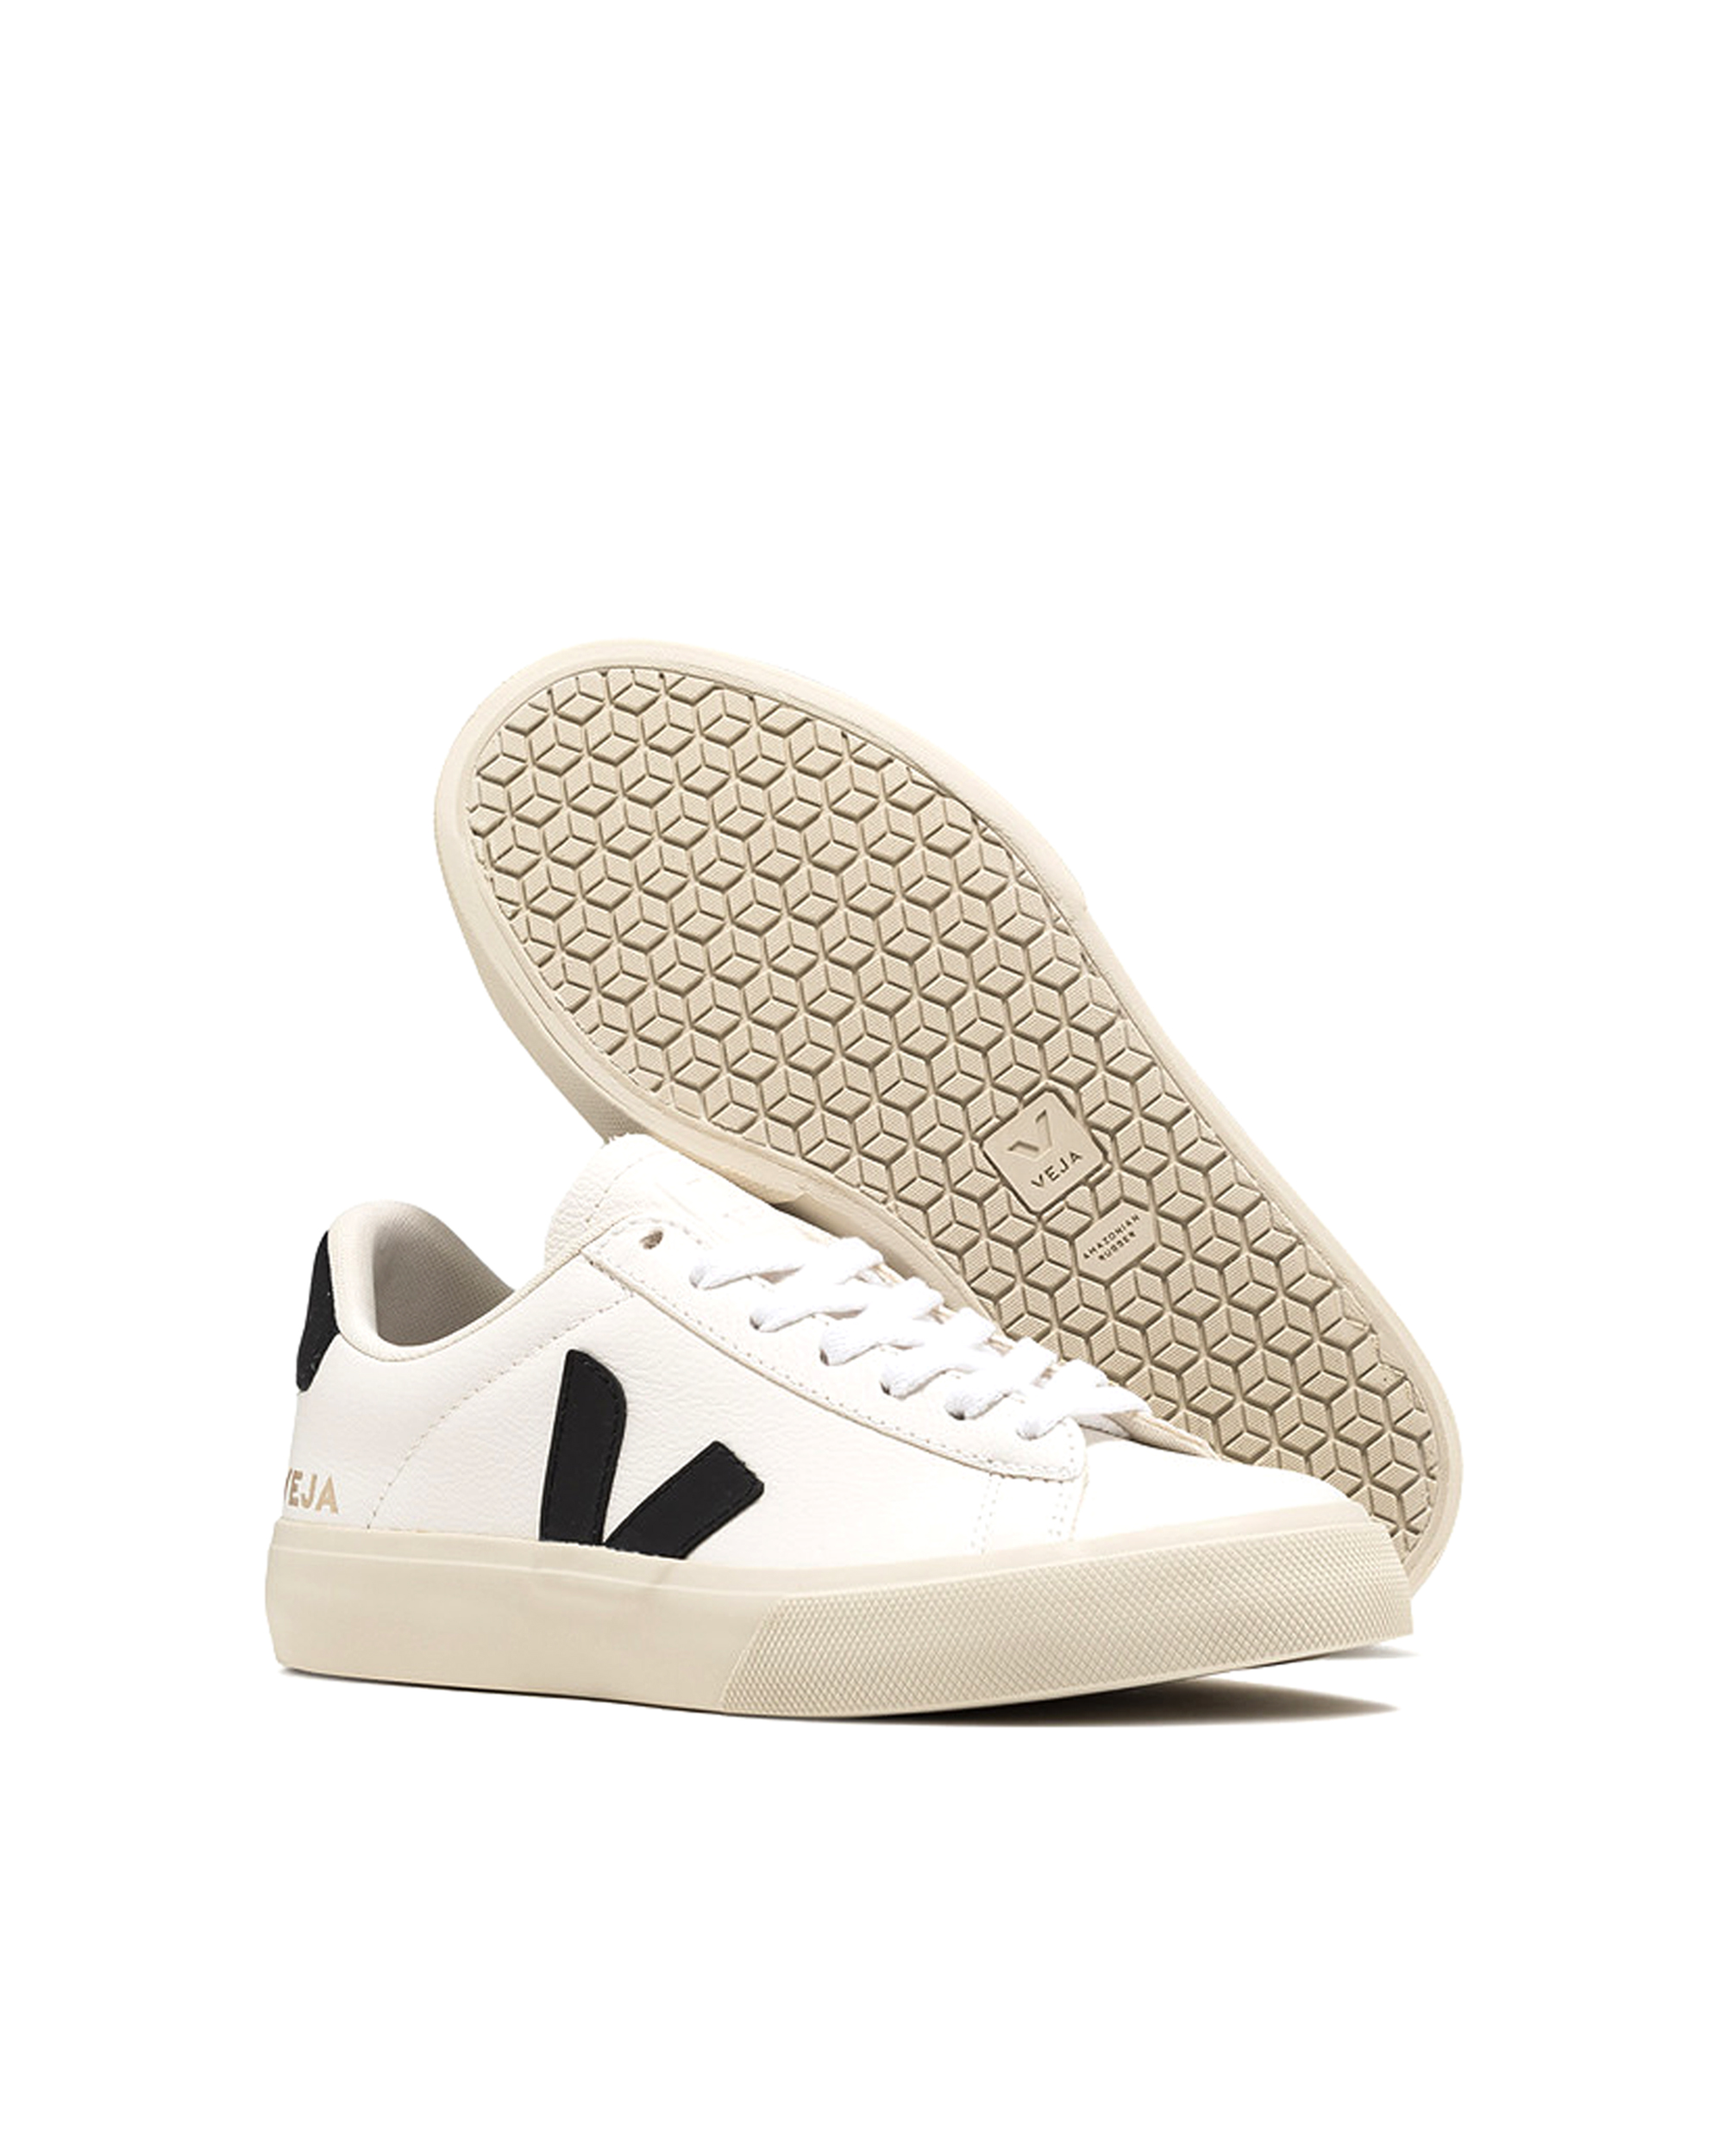 Shop Veja Sneaker Campo Chromefree White / Black In Extra-white_black